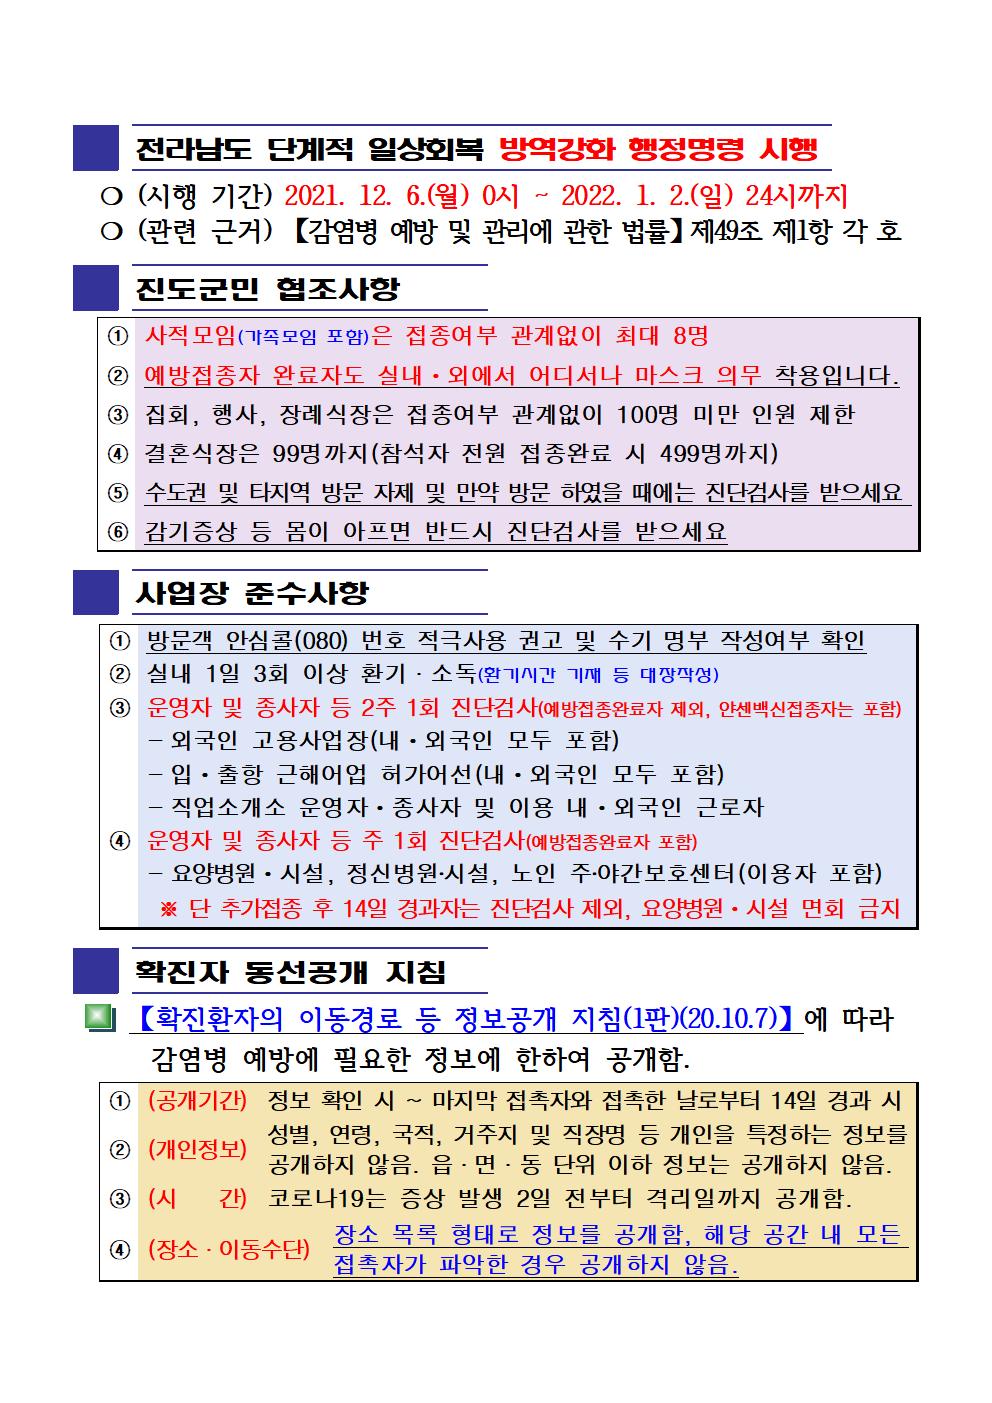 2021년 코로나 19 대응 일일상황보고(12월 8일 24시 기준) 첨부#2